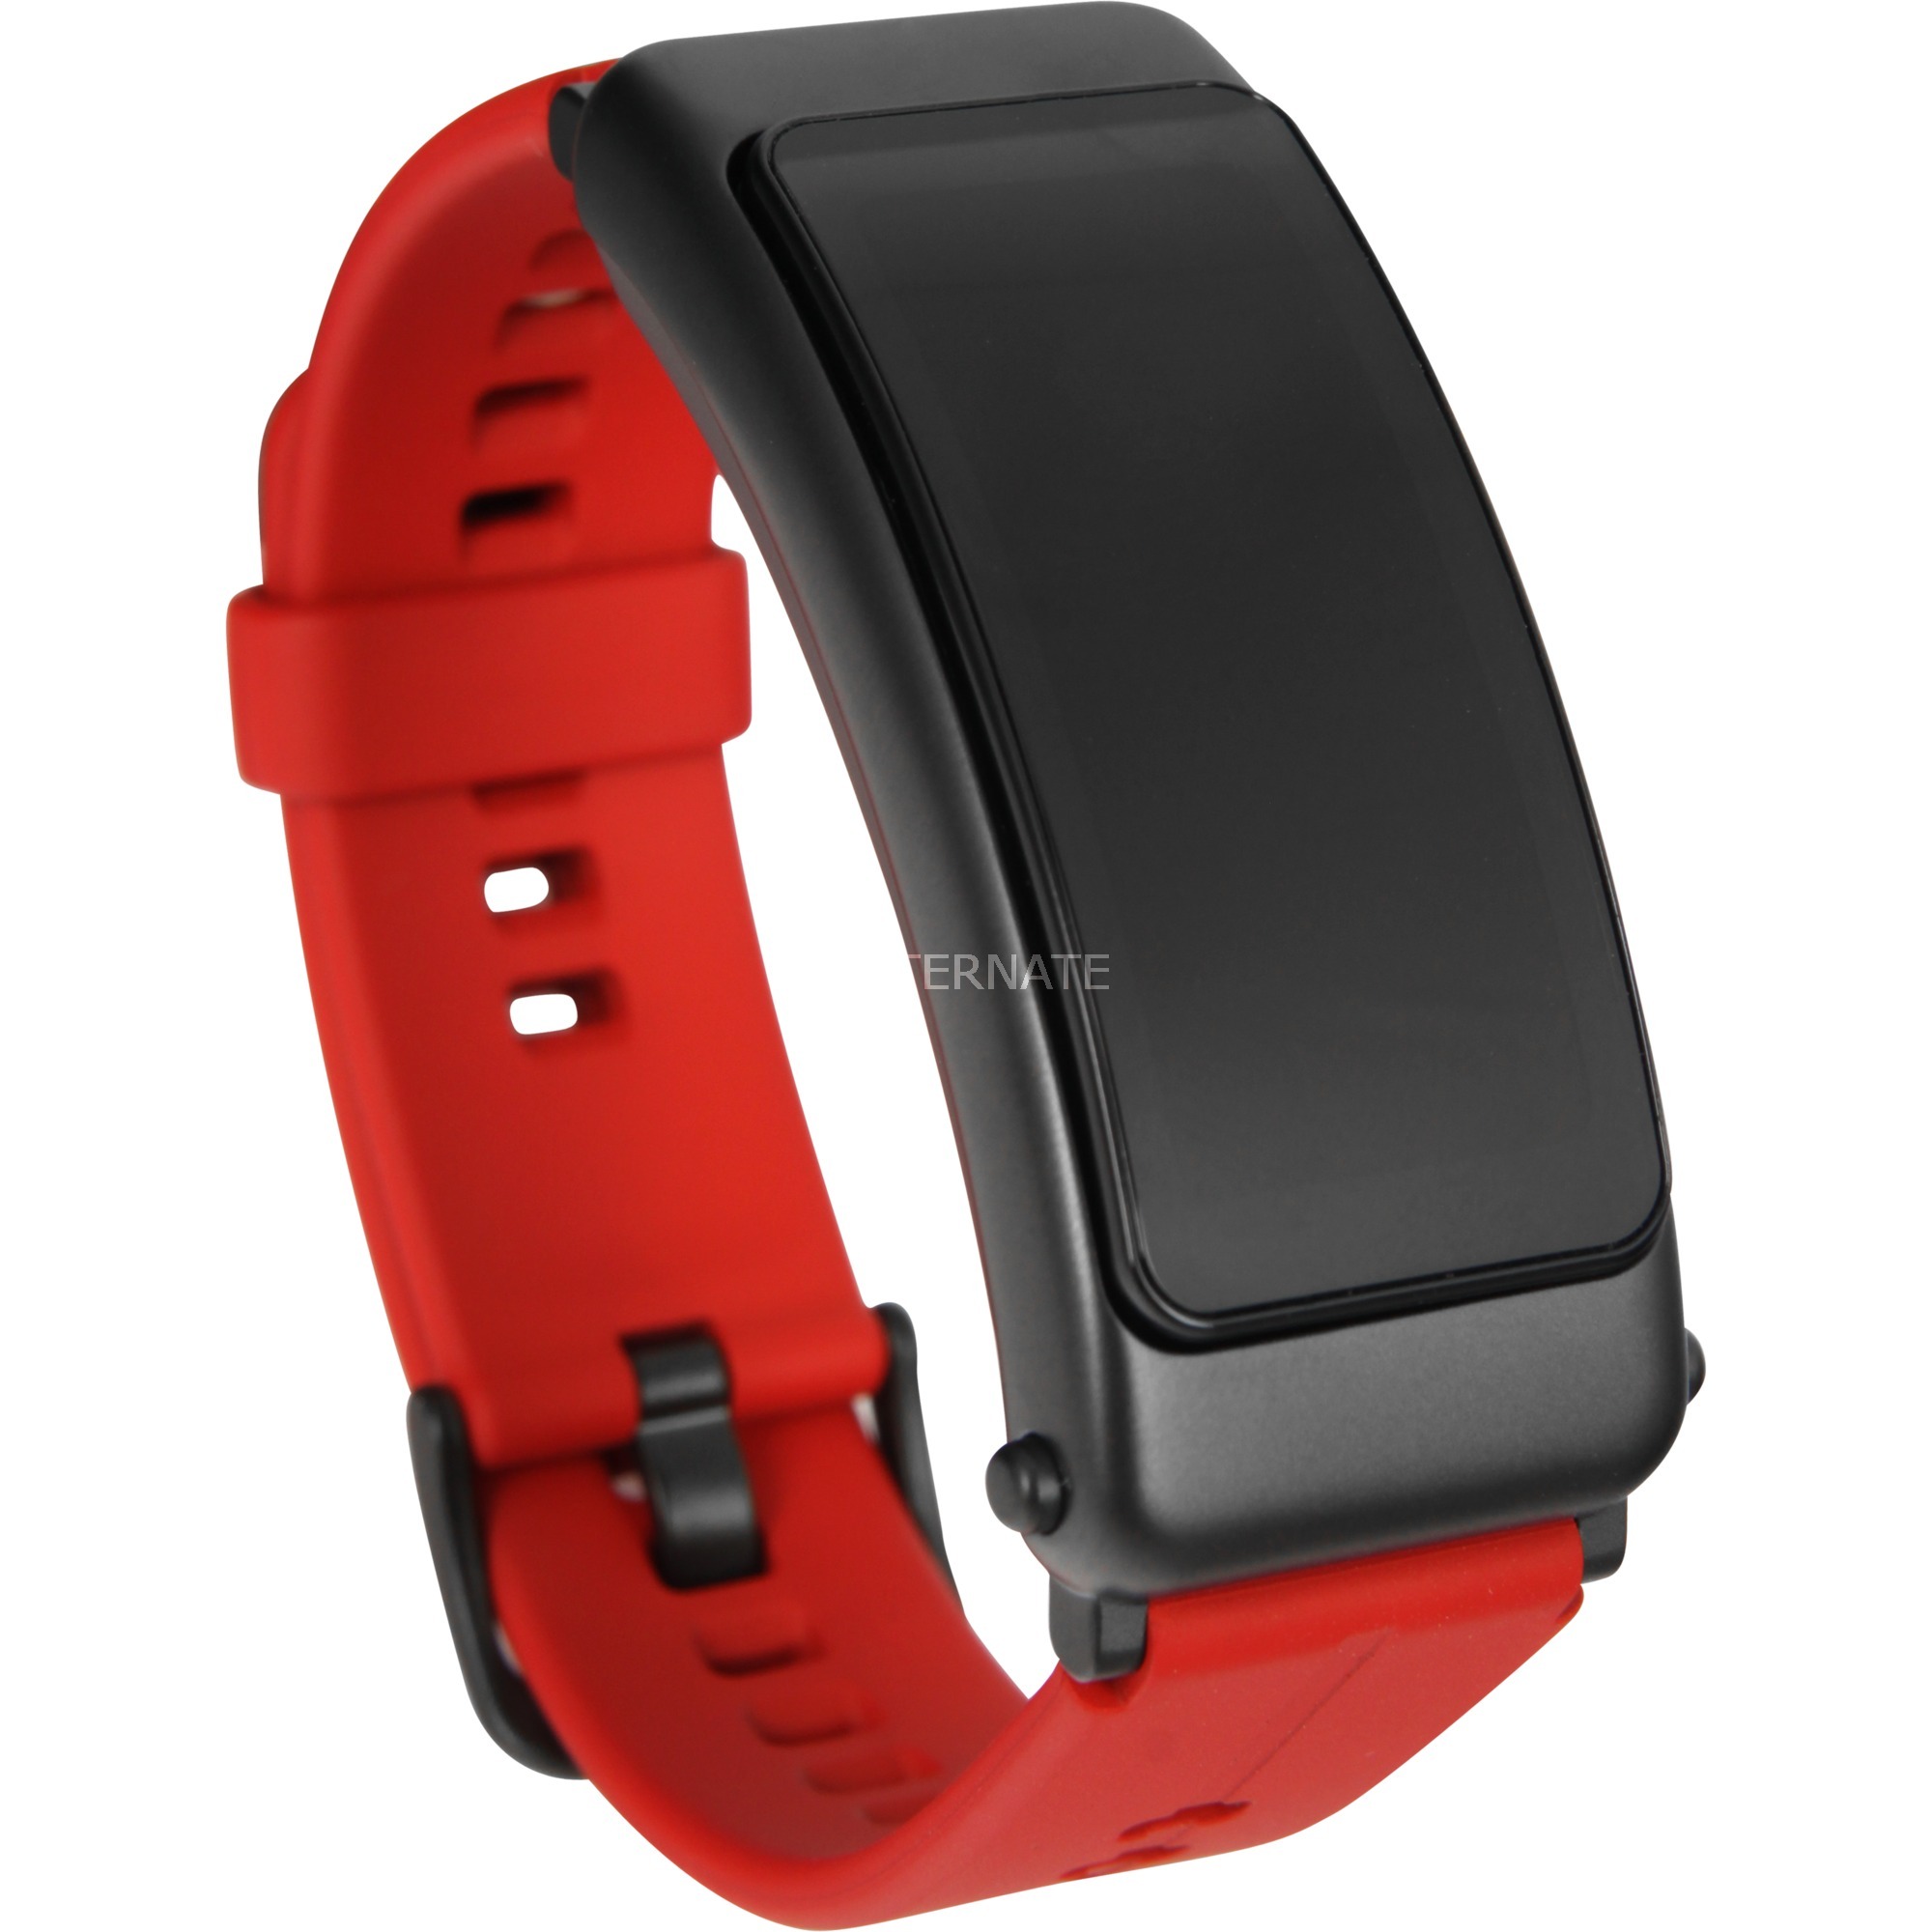 Image of Alternate - TalkBand B6, Smartwatch online einkaufen bei Alternate